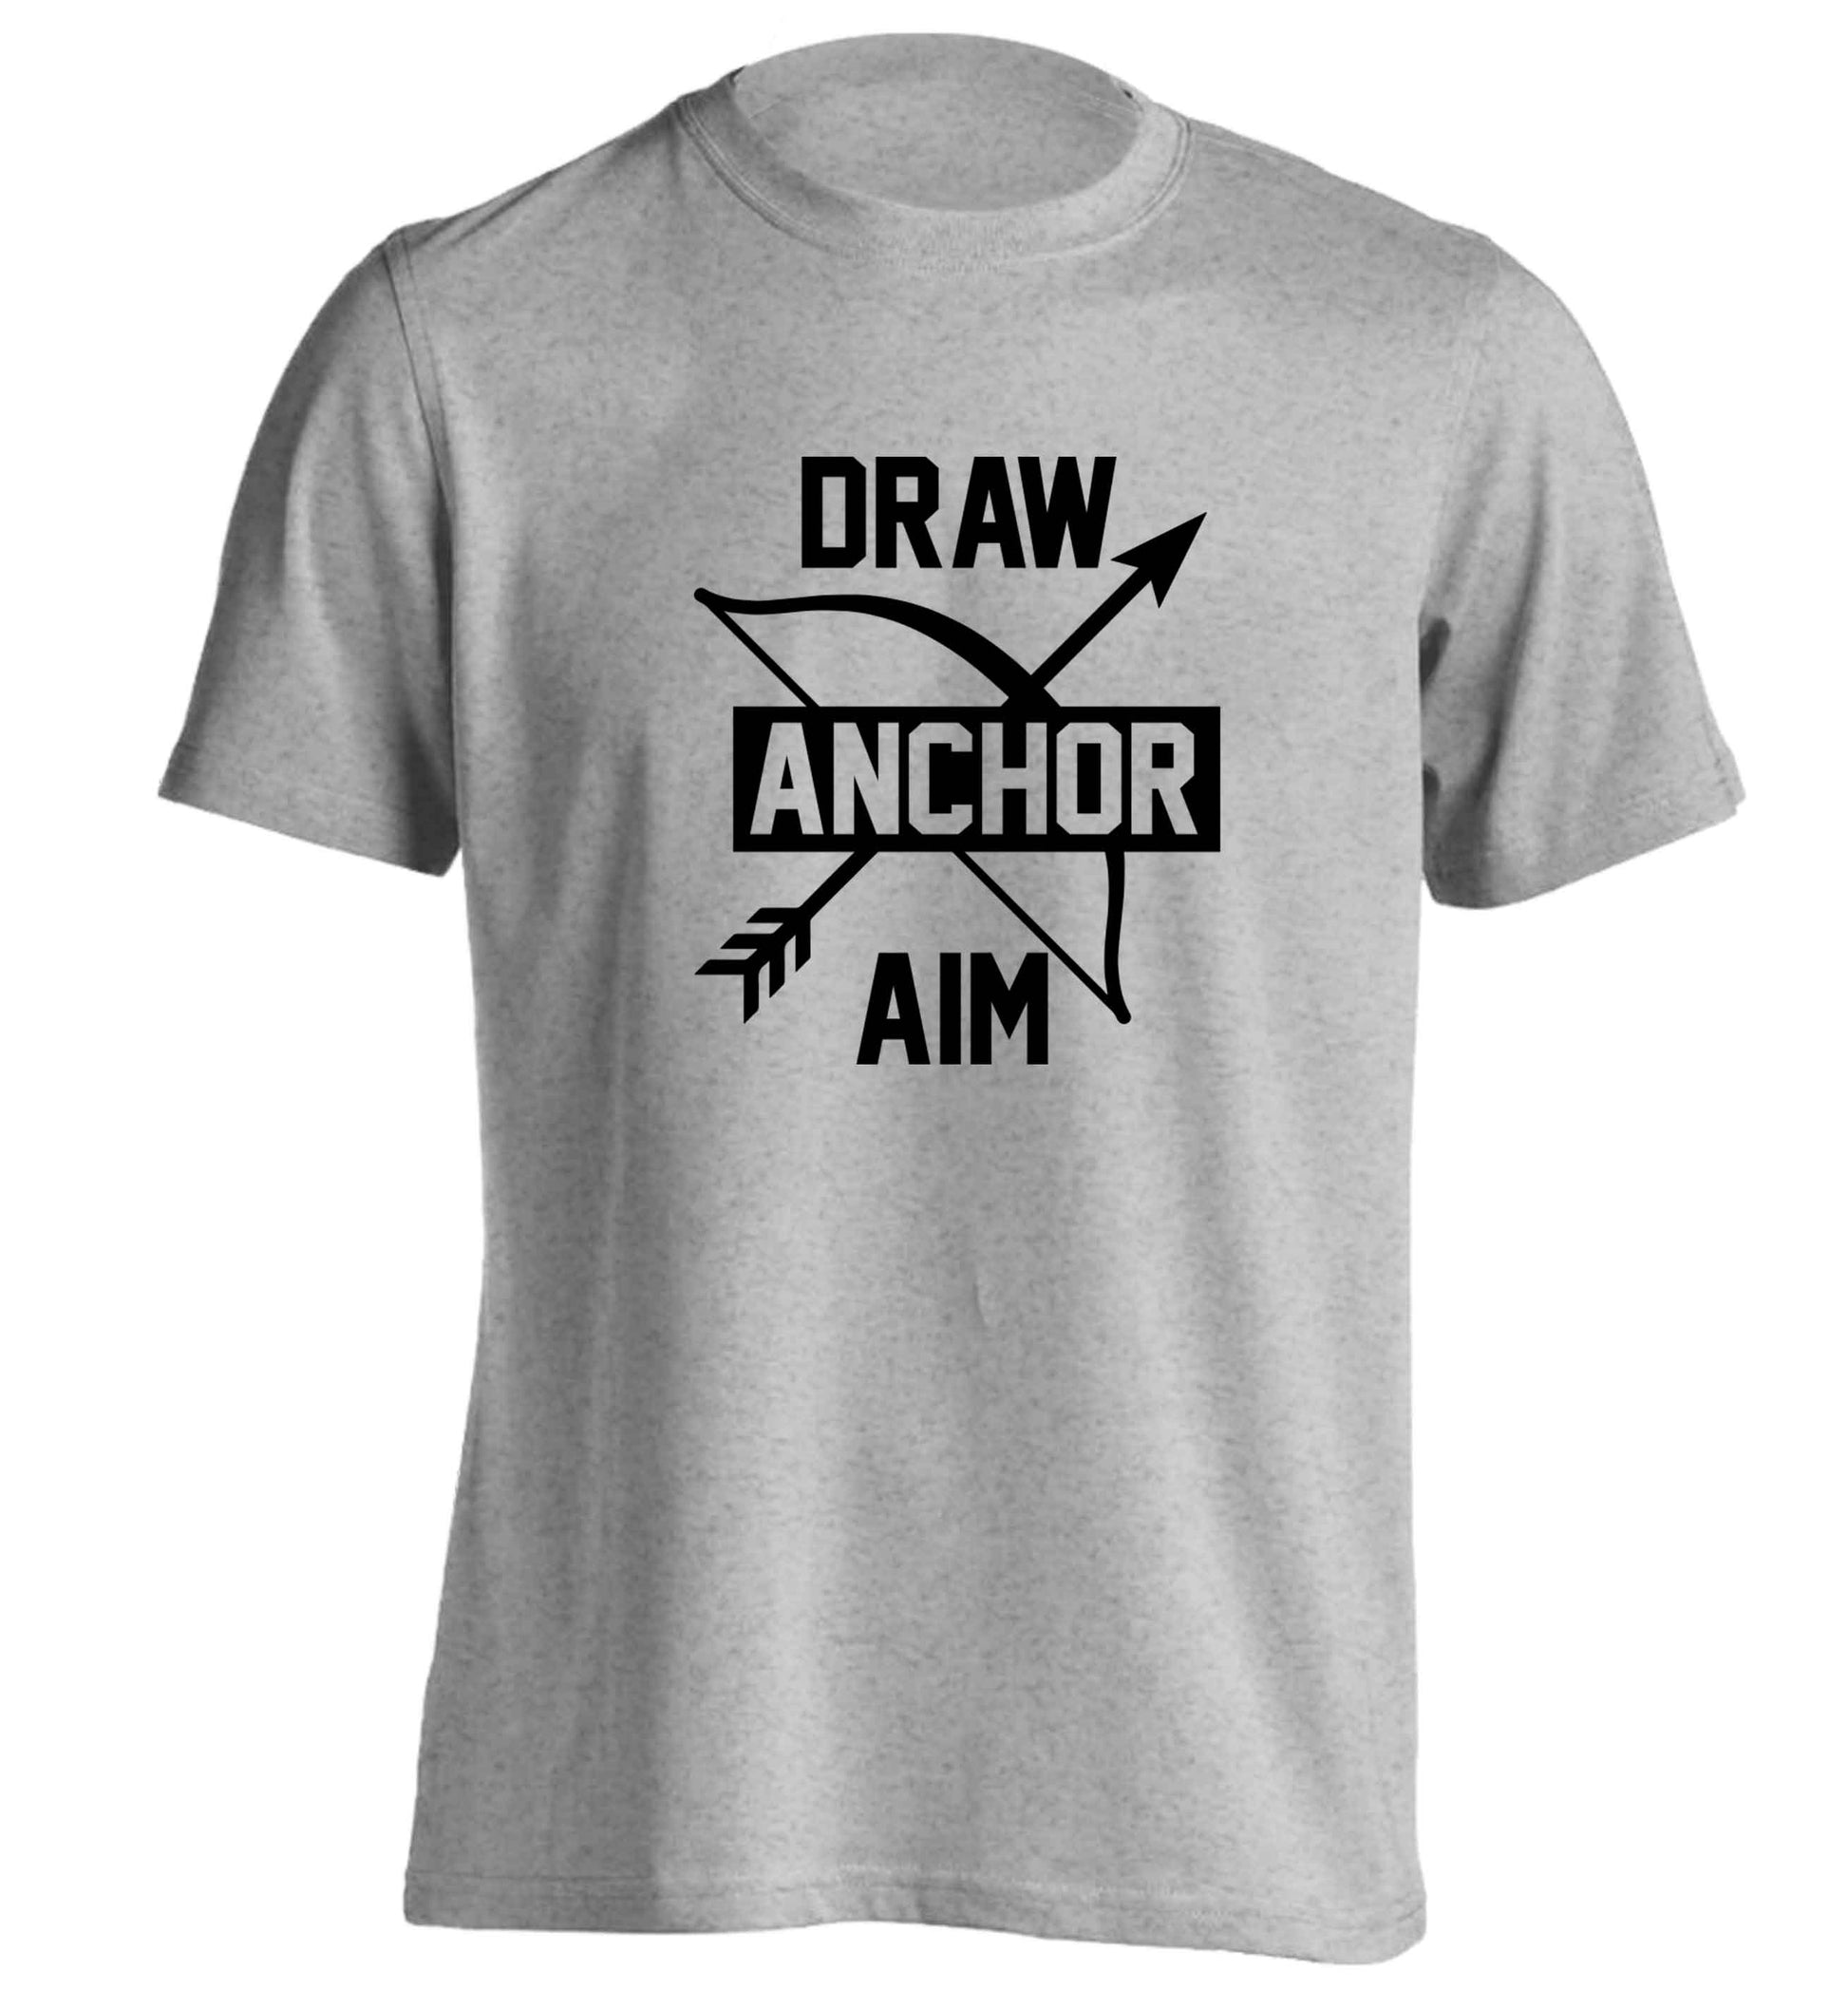 Draw anchor aim adults unisex grey Tshirt 2XL